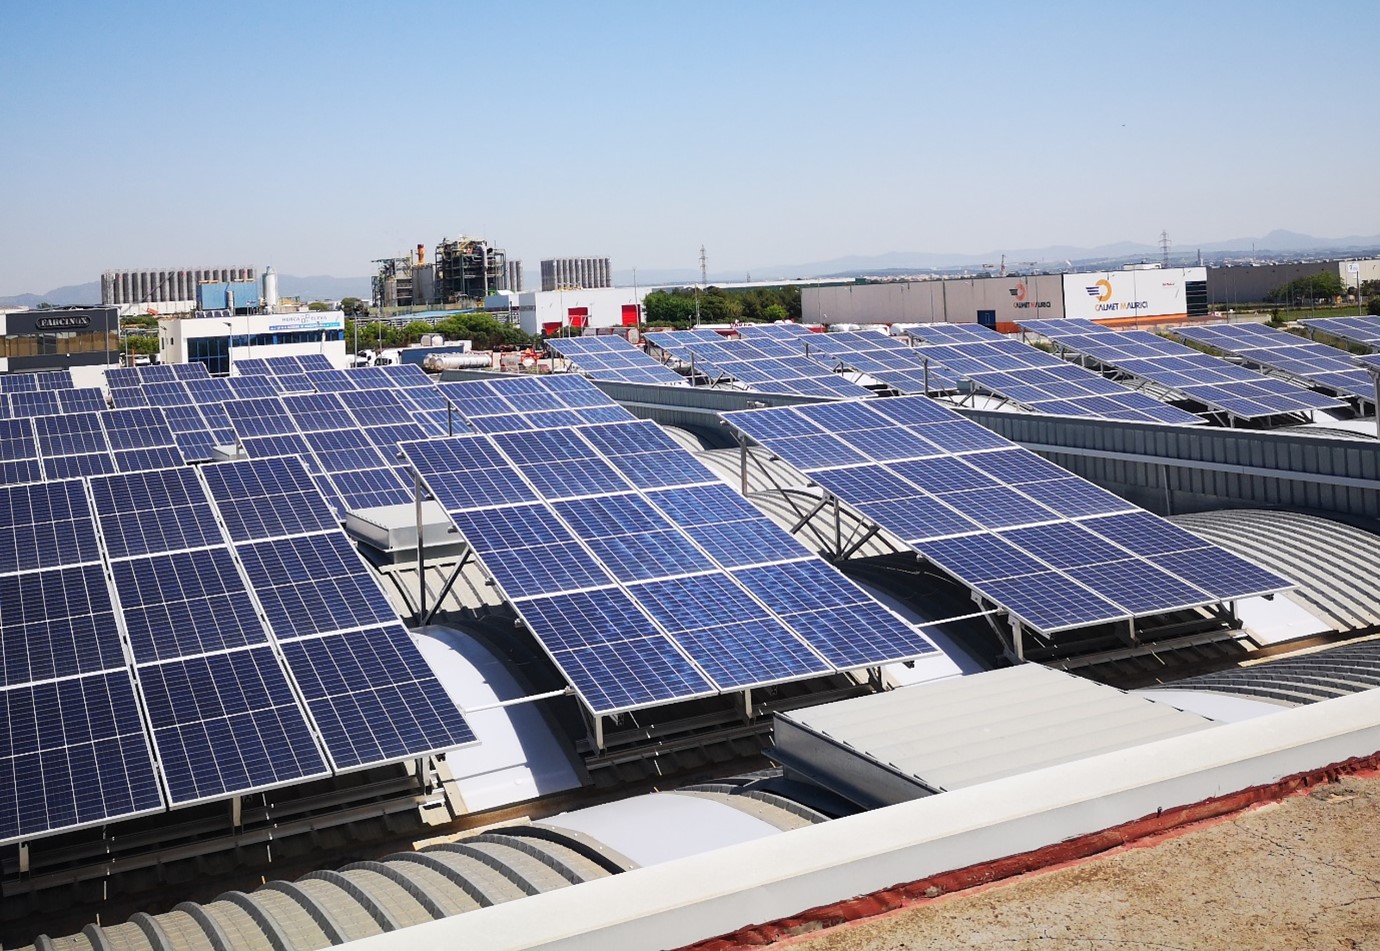  Installation-de-panneaux-solaires-comme-alternative-durable